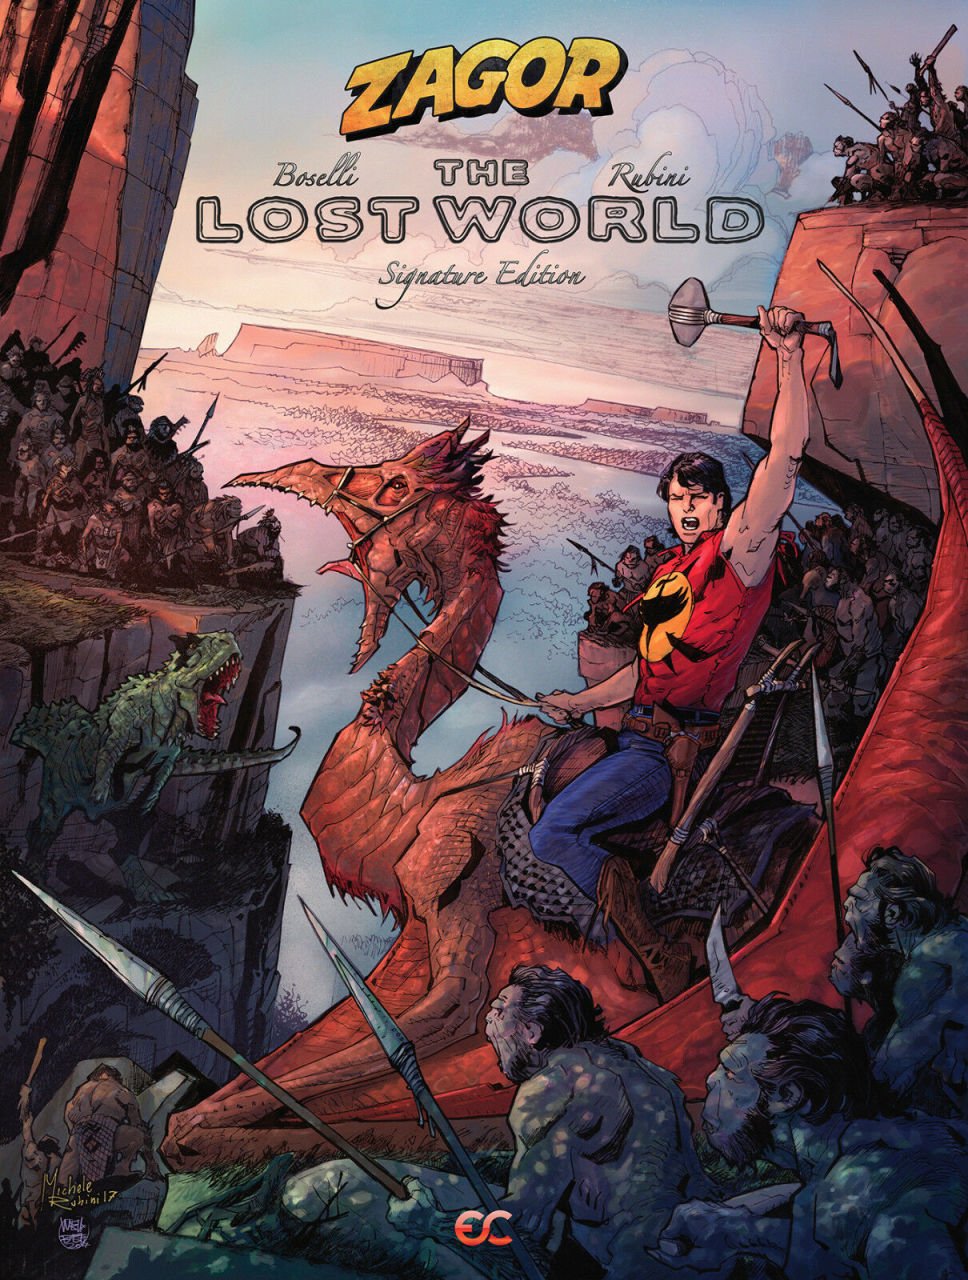 Zagor: The Lost World book (Rubini cover)